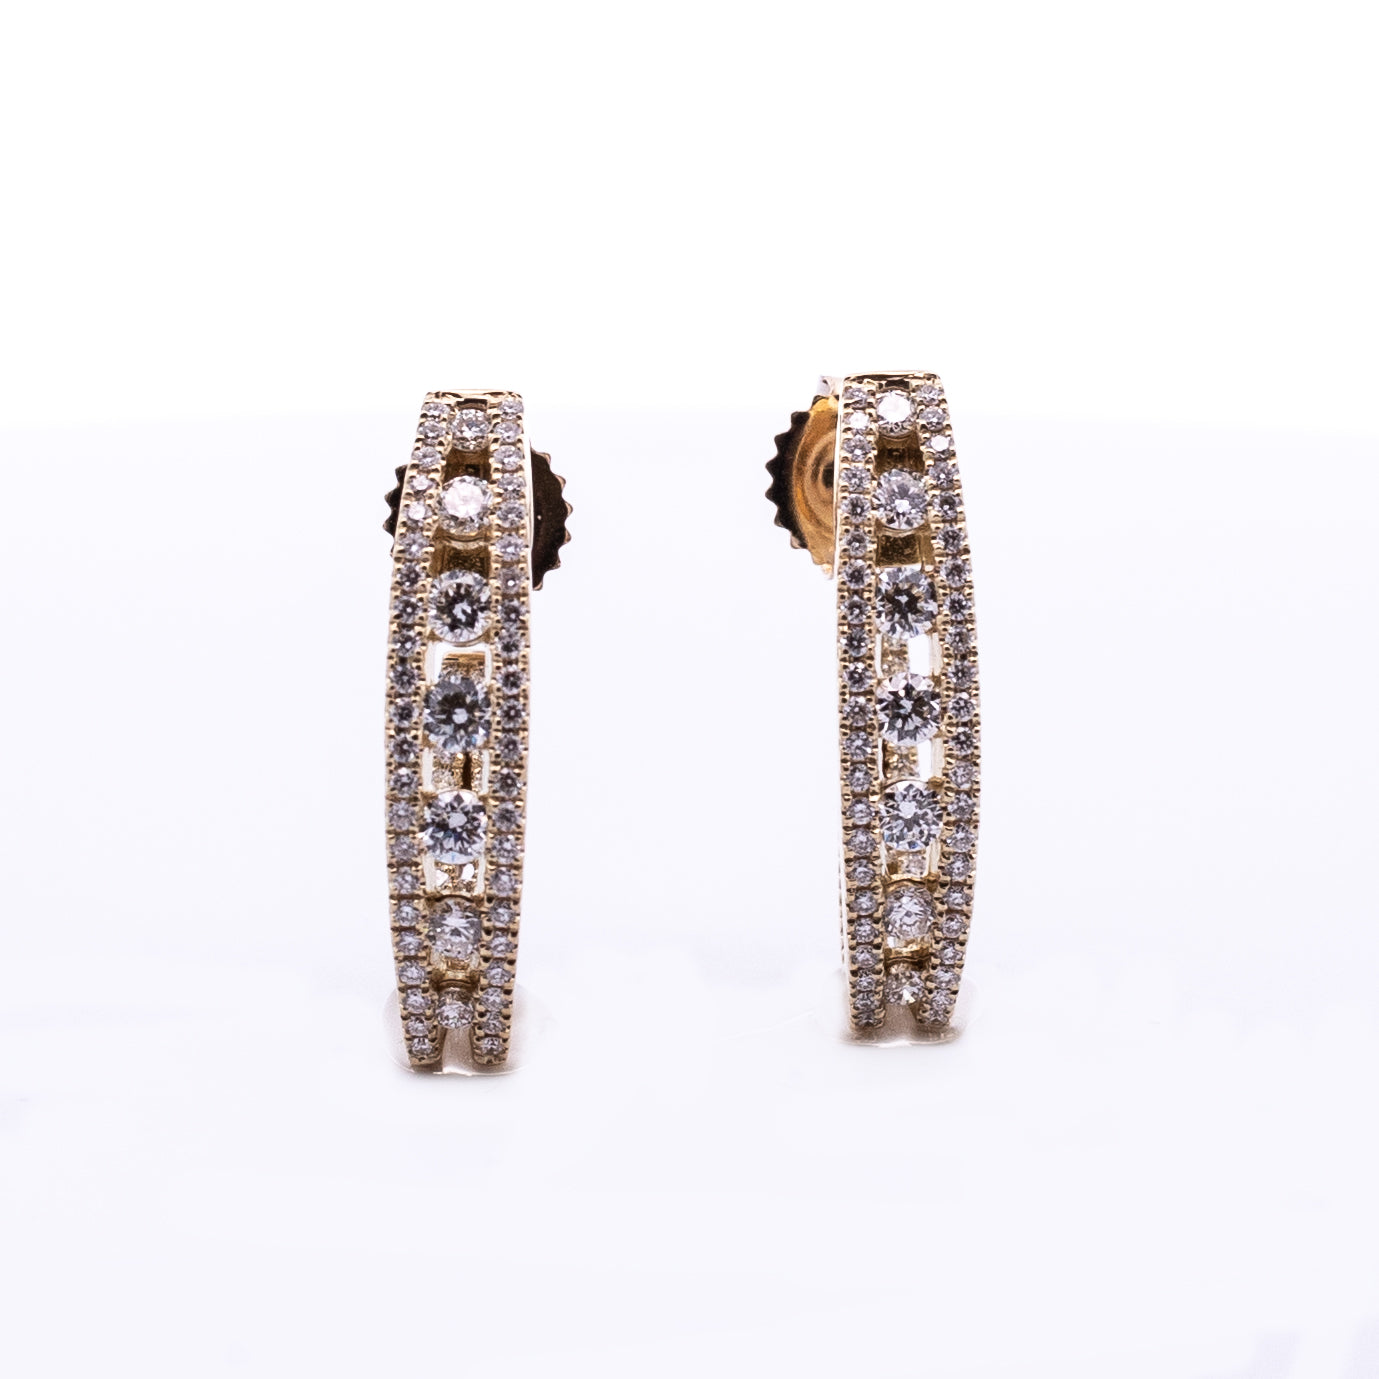 Drop Diamond Earrings - Diamond Earrings